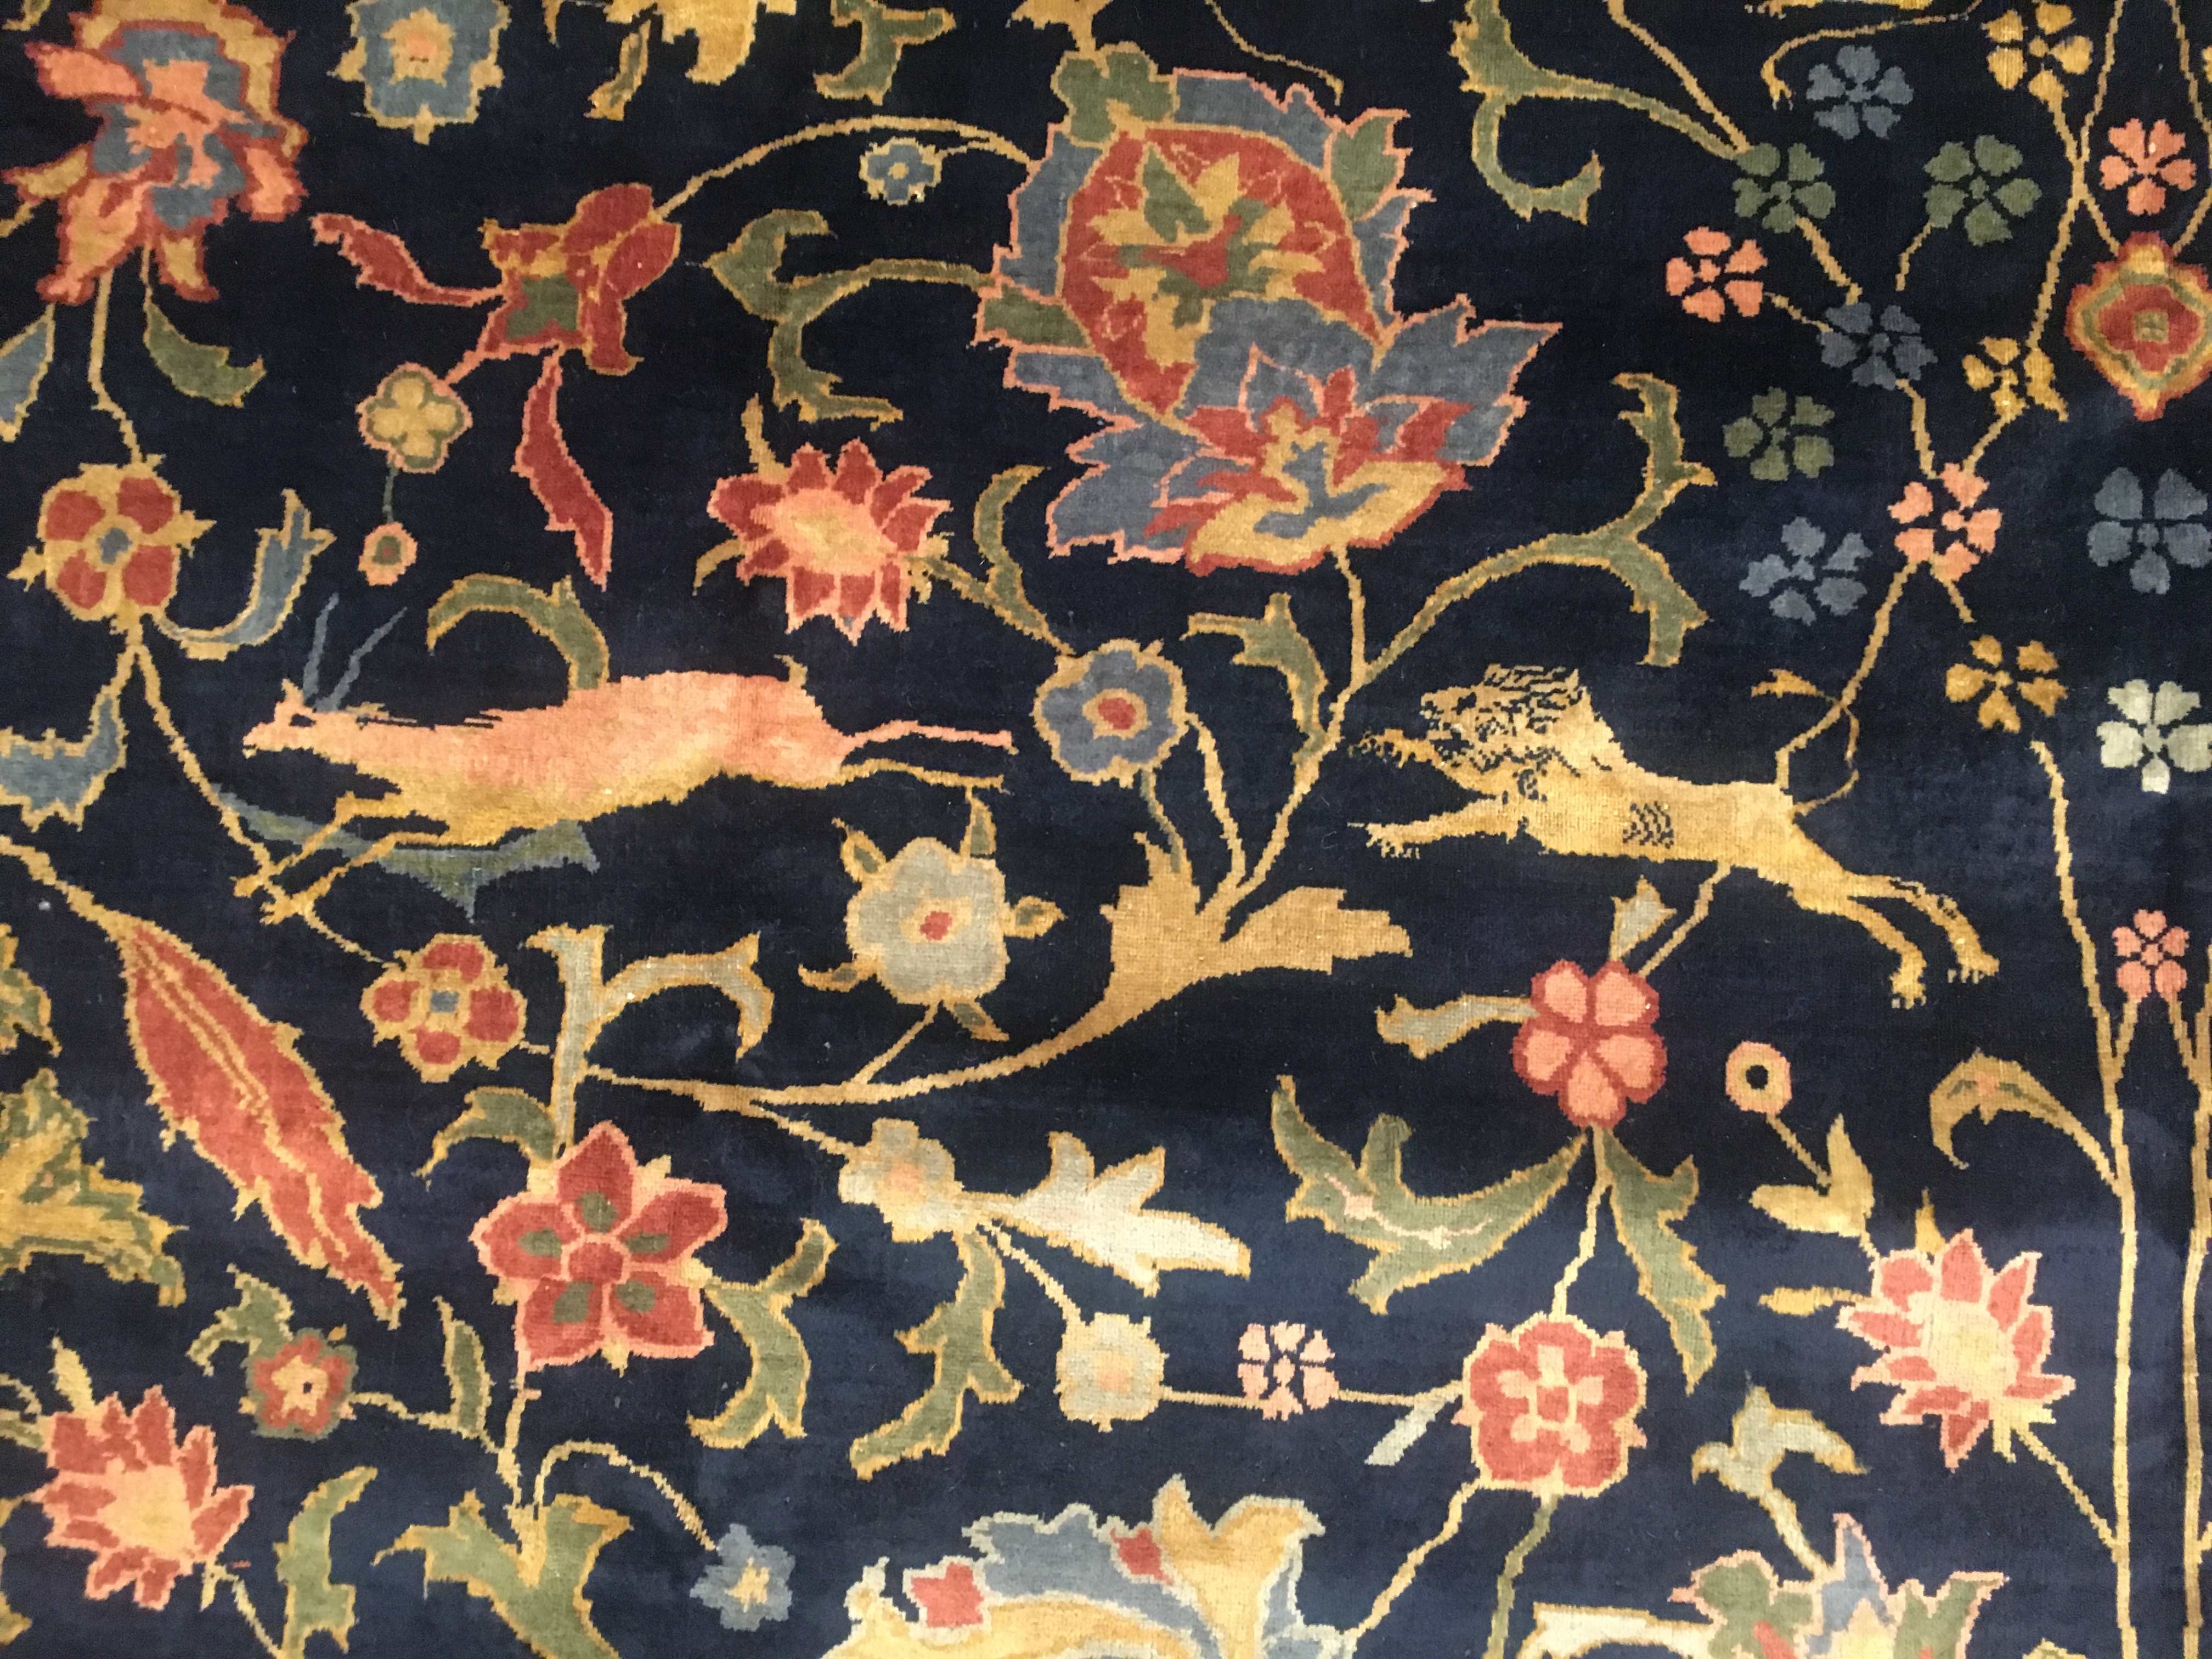 Antique indian Carpet - # 53876